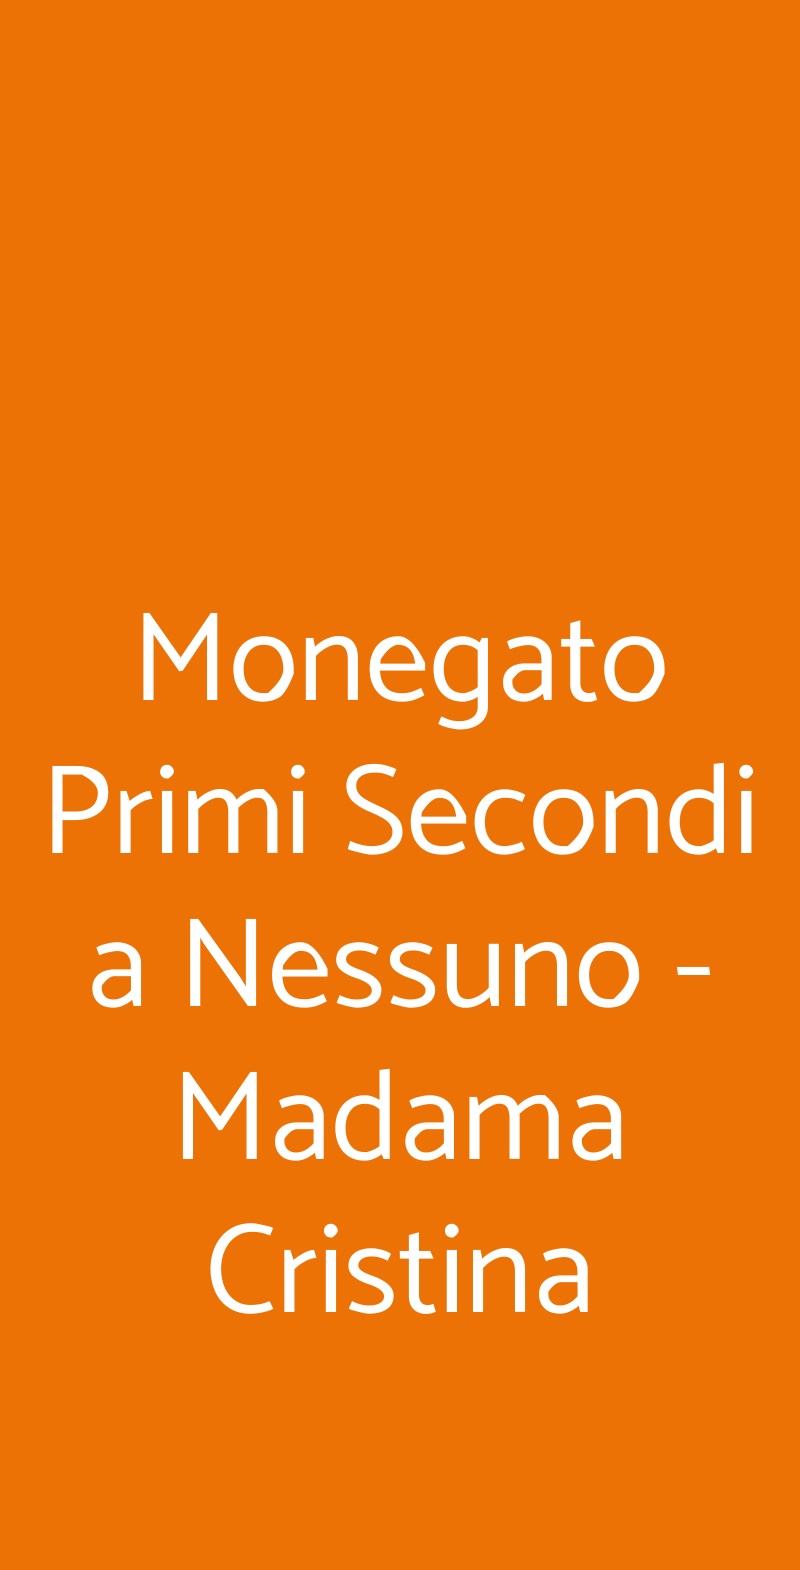 Monegato Primi Secondi a Nessuno - Madama Cristina Torino menù 1 pagina